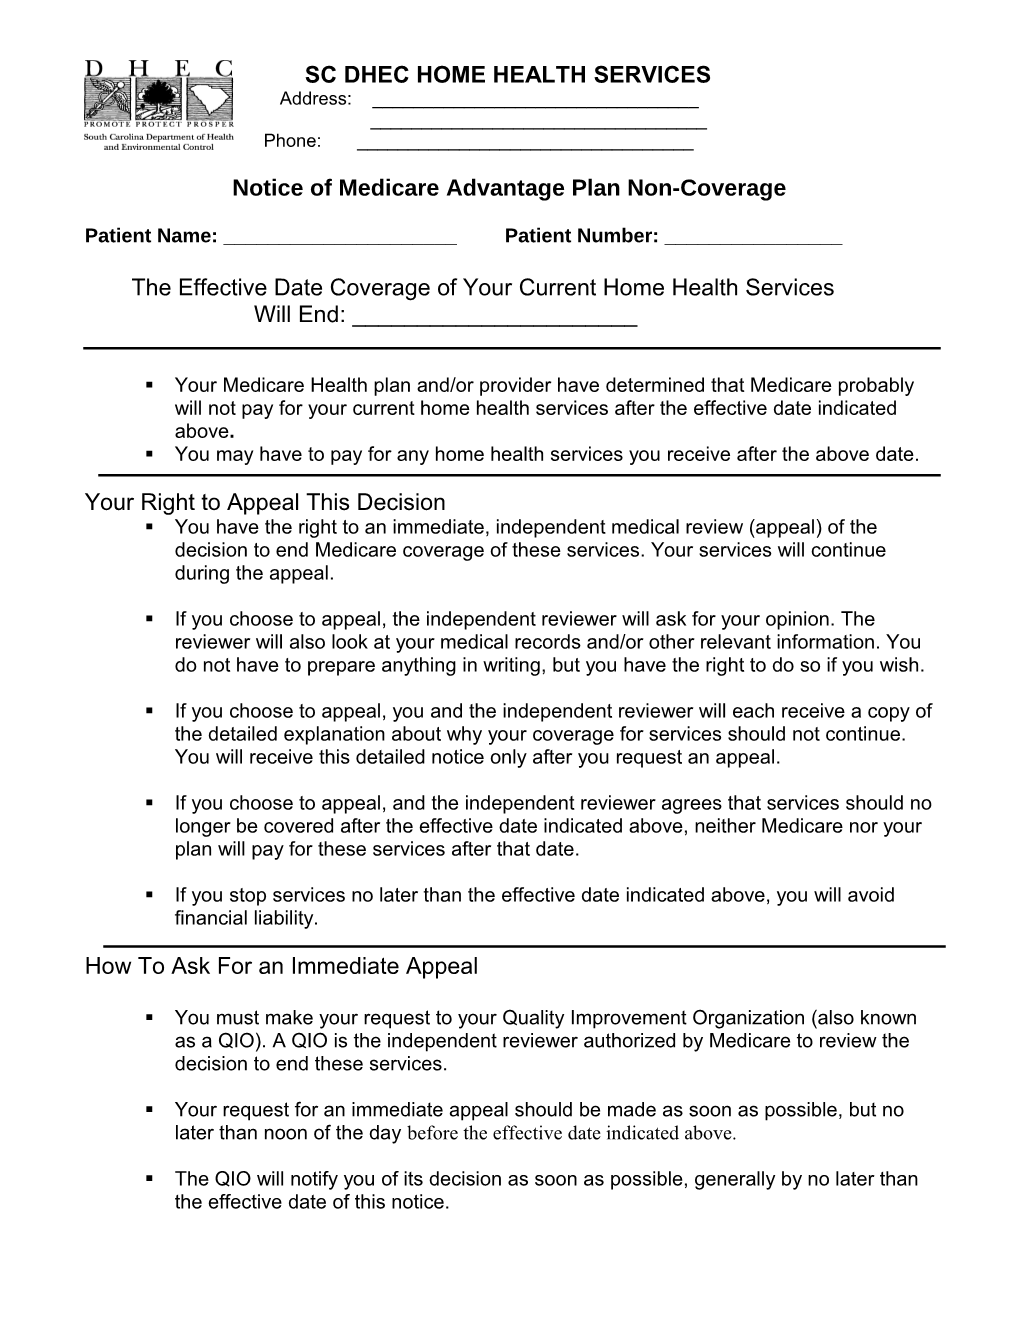 Notice of Medicare Advantage Plan Non-Coverage